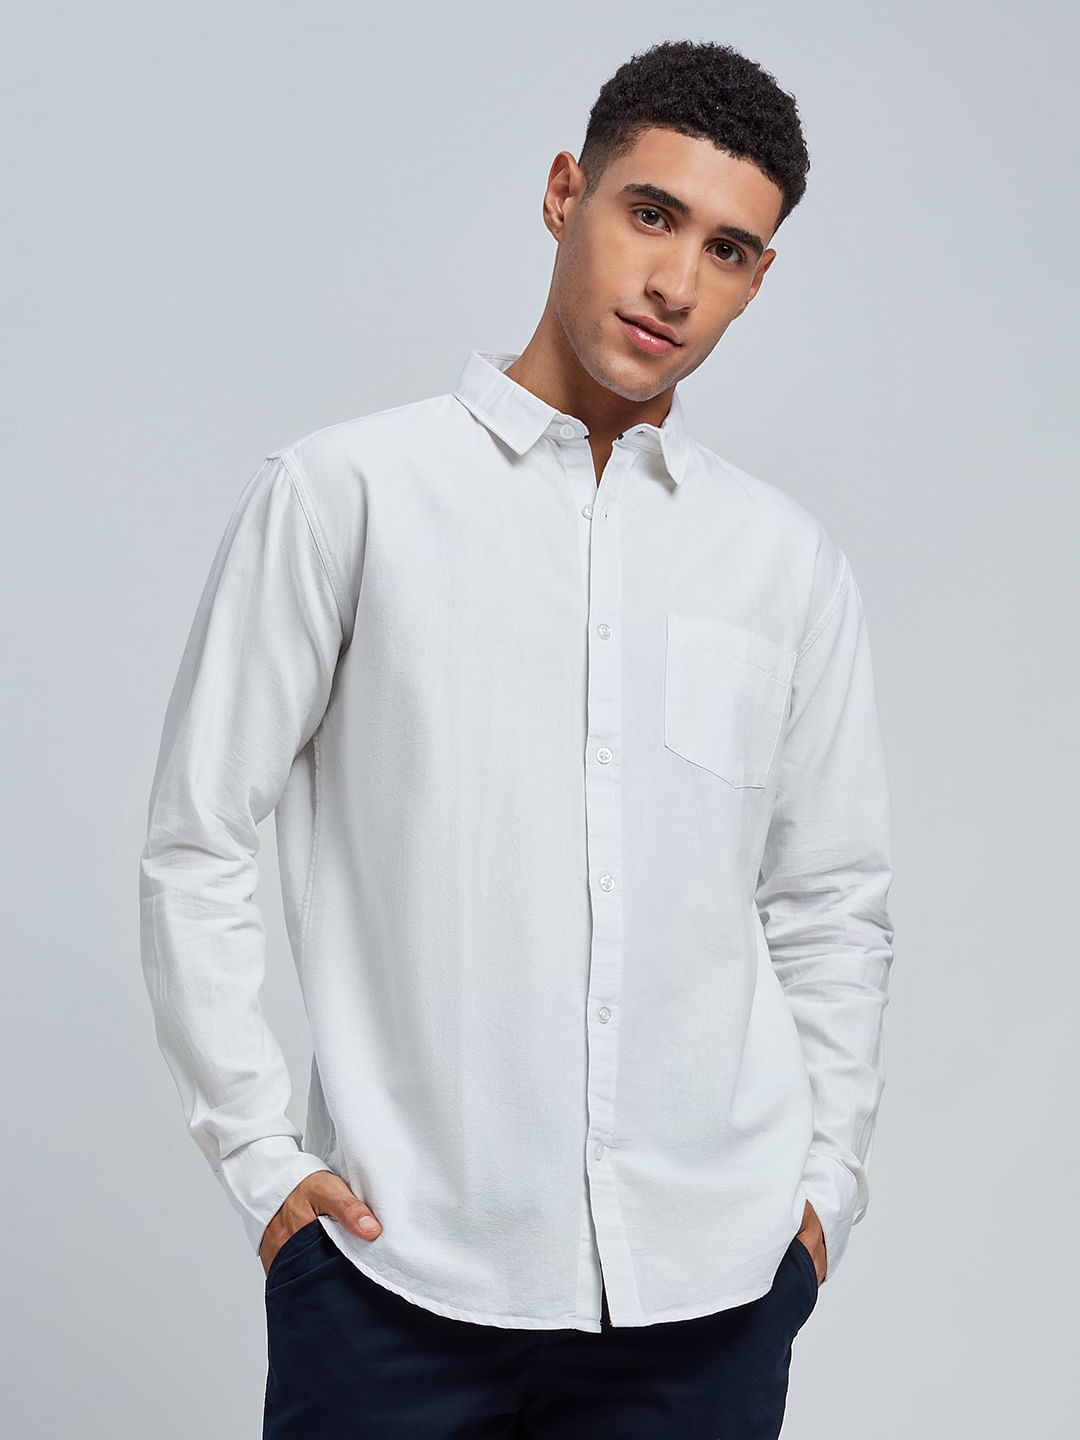 Buy Oxford Shirt White Men's Shirt Online